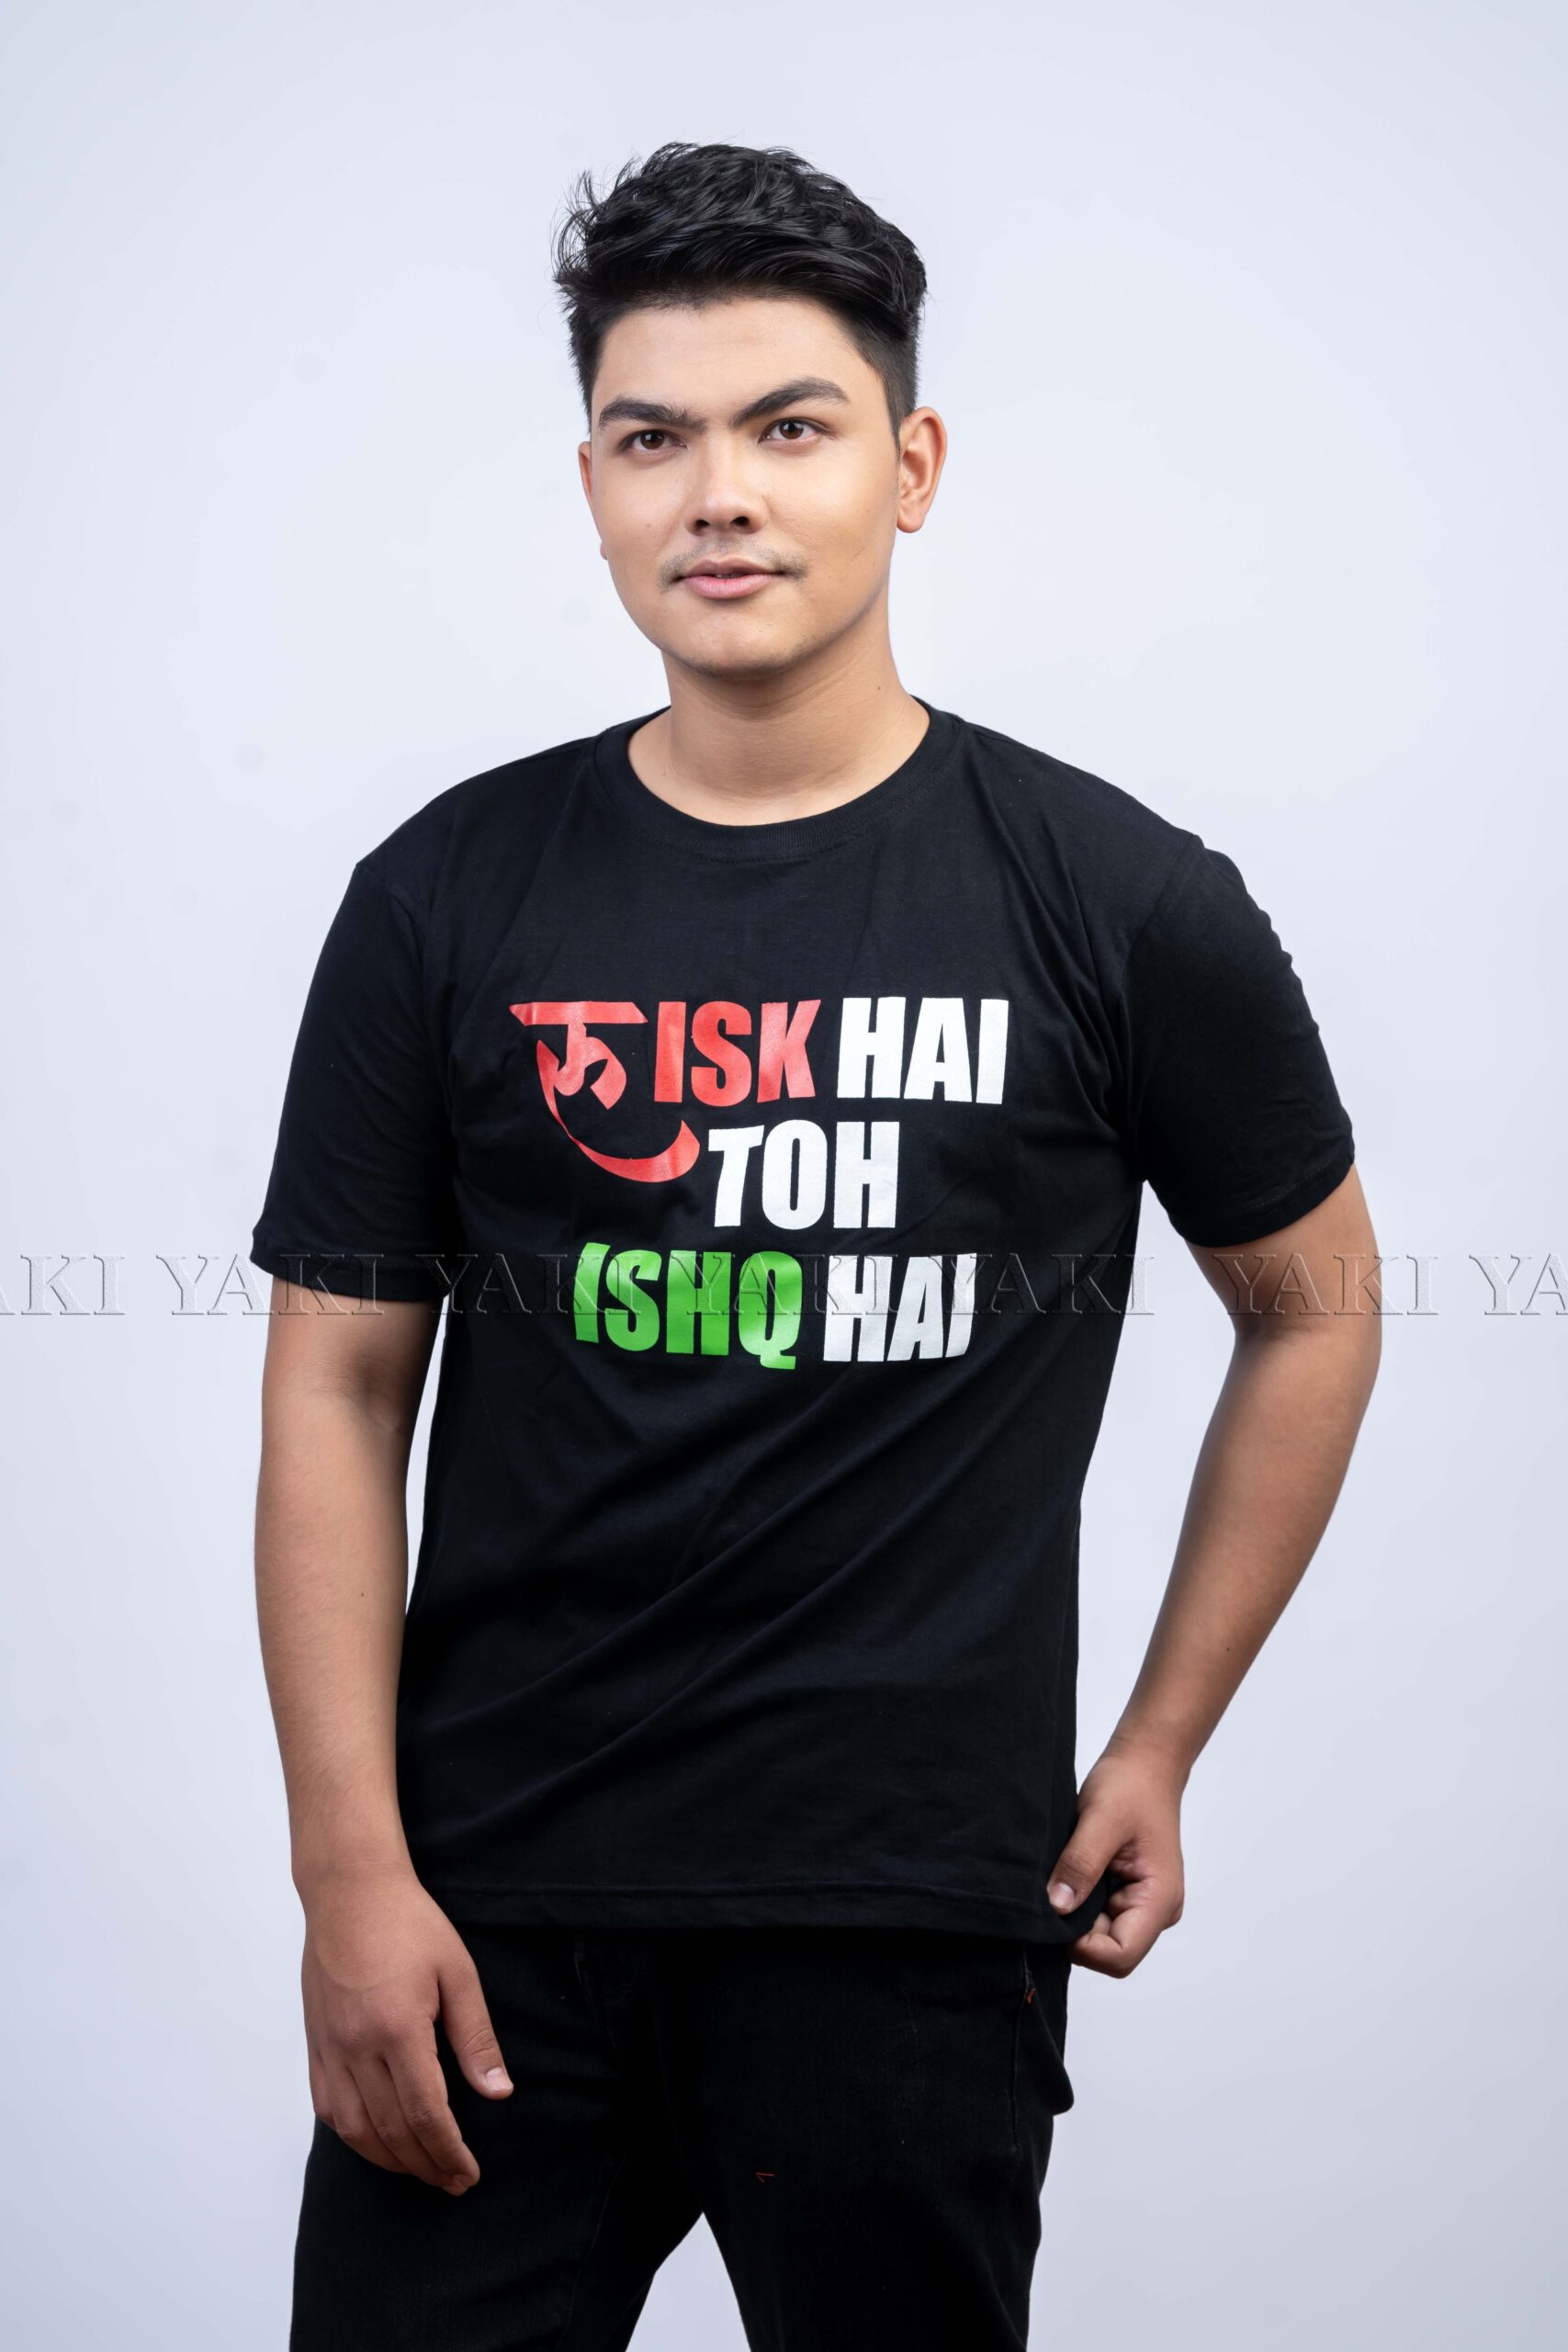 Risk Hai To Ishq Hai T-shirts